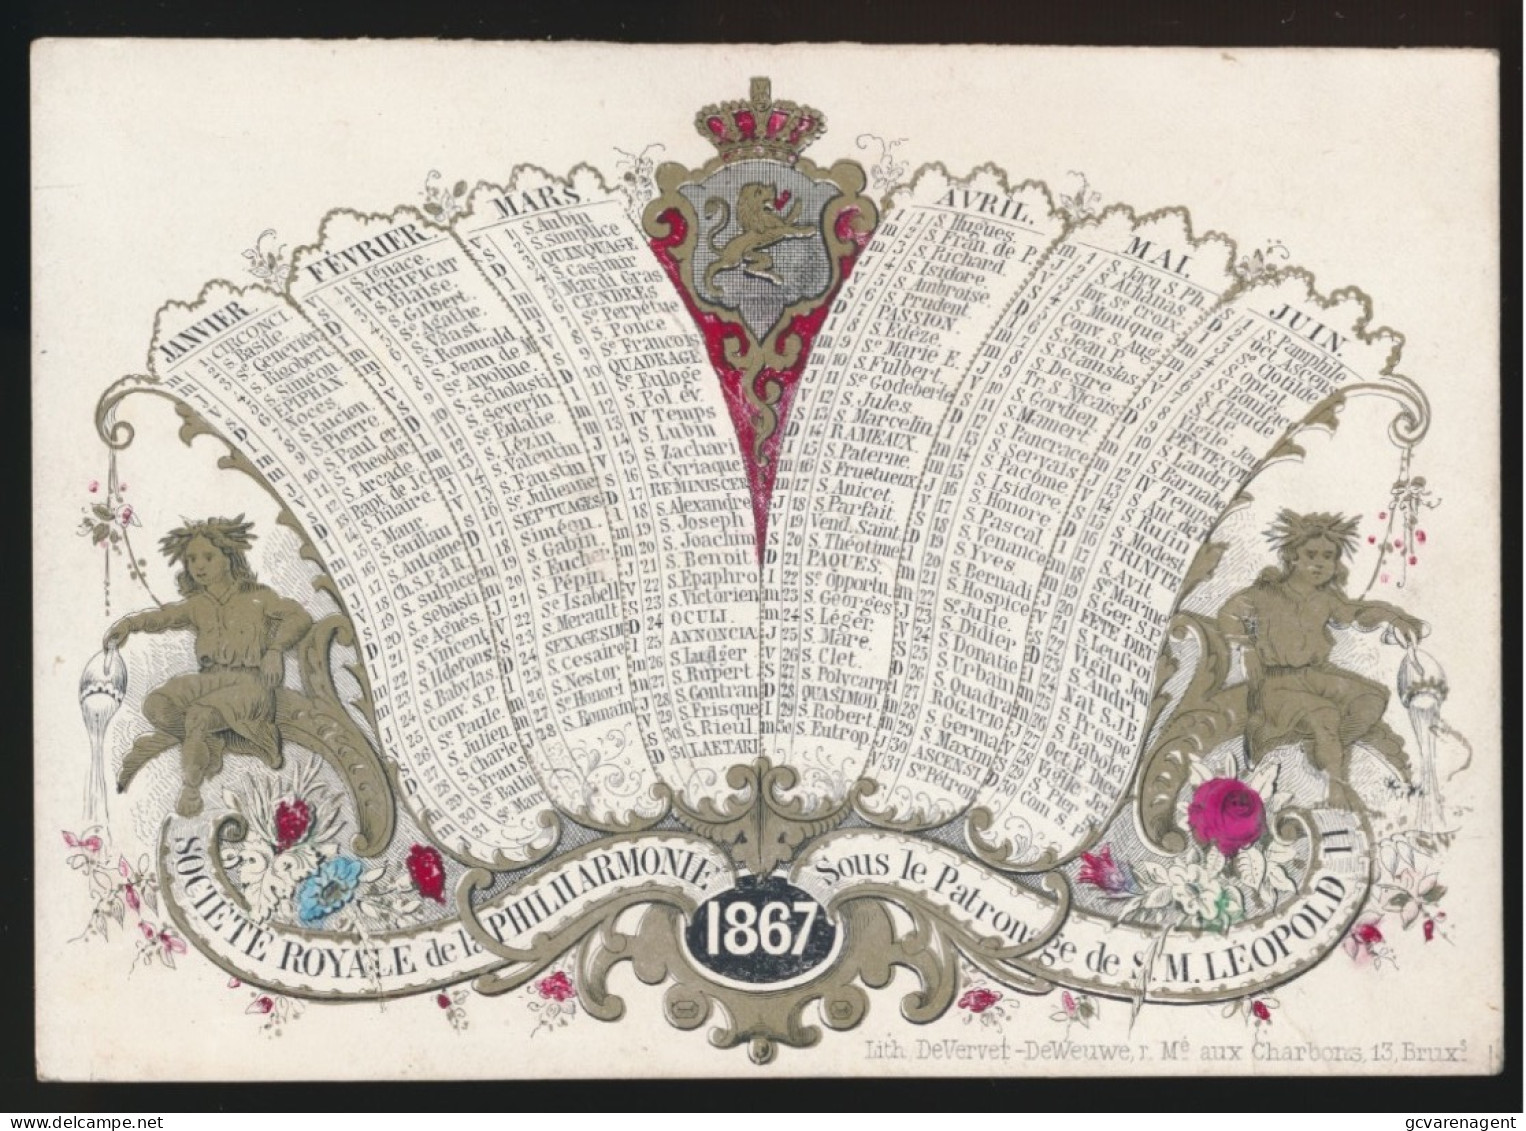 PORSELEINKAART = CALENDRIER 1867 - DUBBELZIJDIG - SOCIETE ROYALE DE LA PHILHARMONIE = SOUS LE PATRONAGE DE S.M. LEOPOLD - Porseleinkaarten